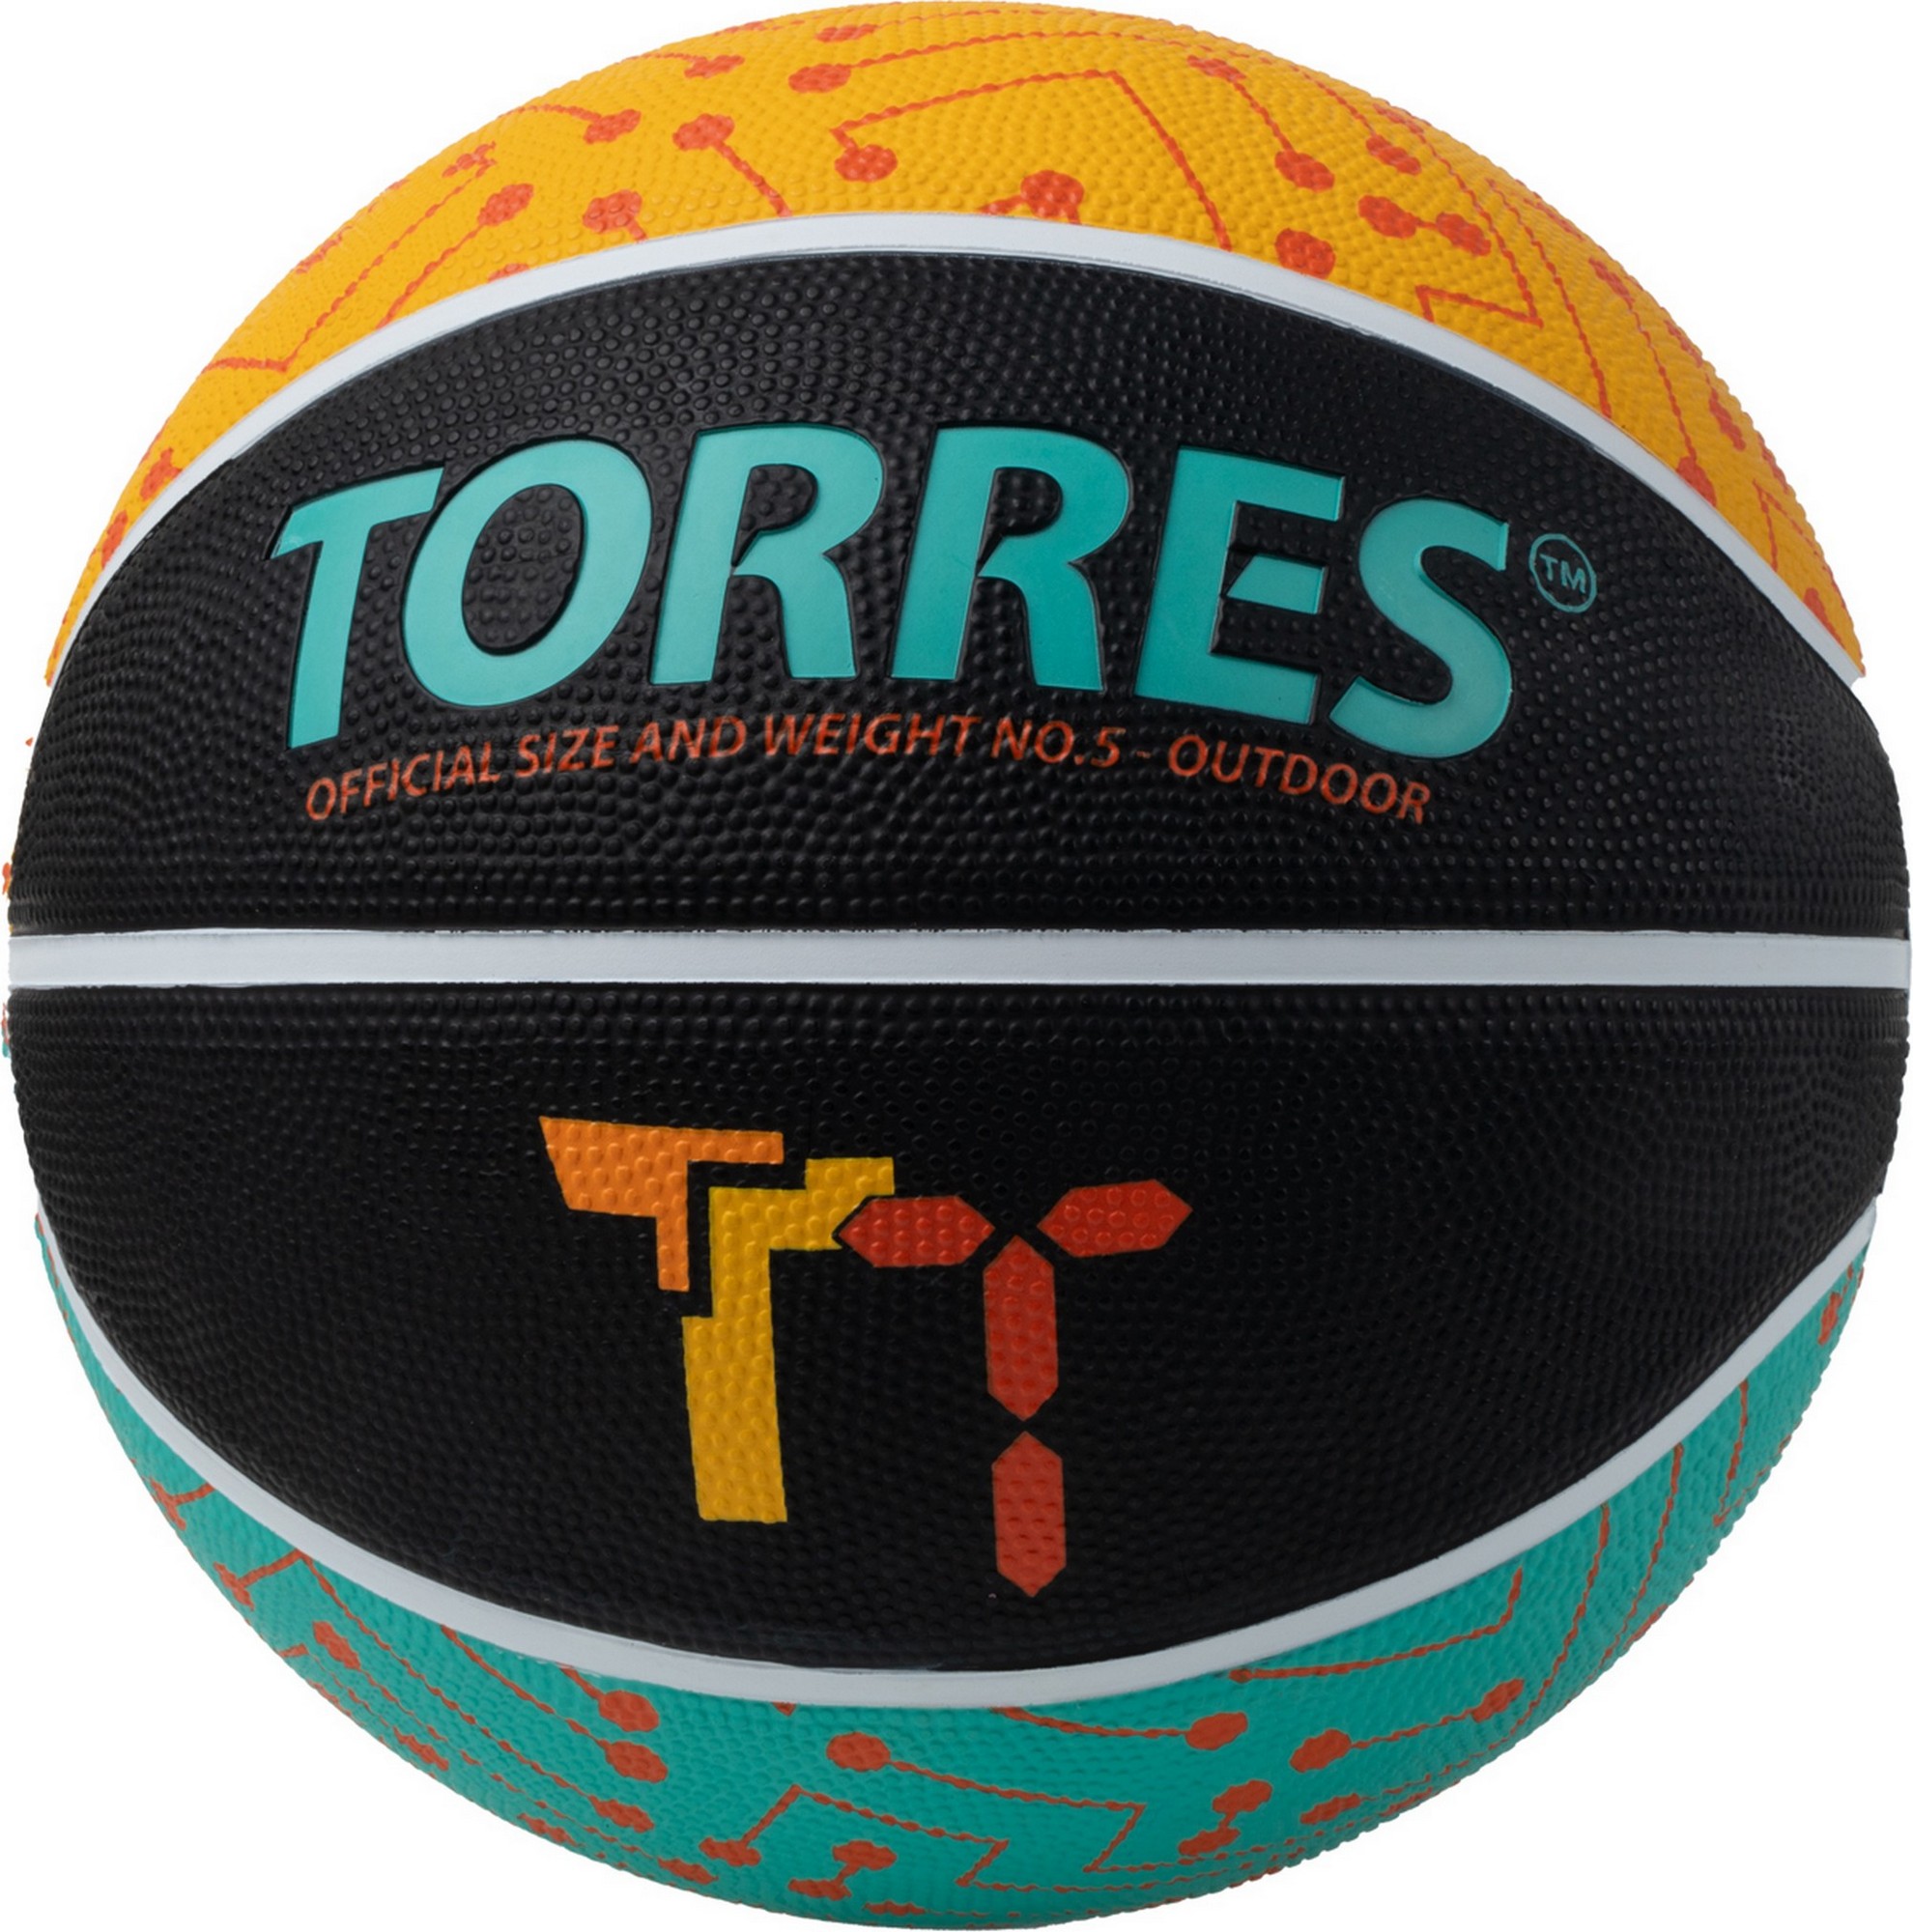 Мяч баскетбольный Torres TT B023155 р.5